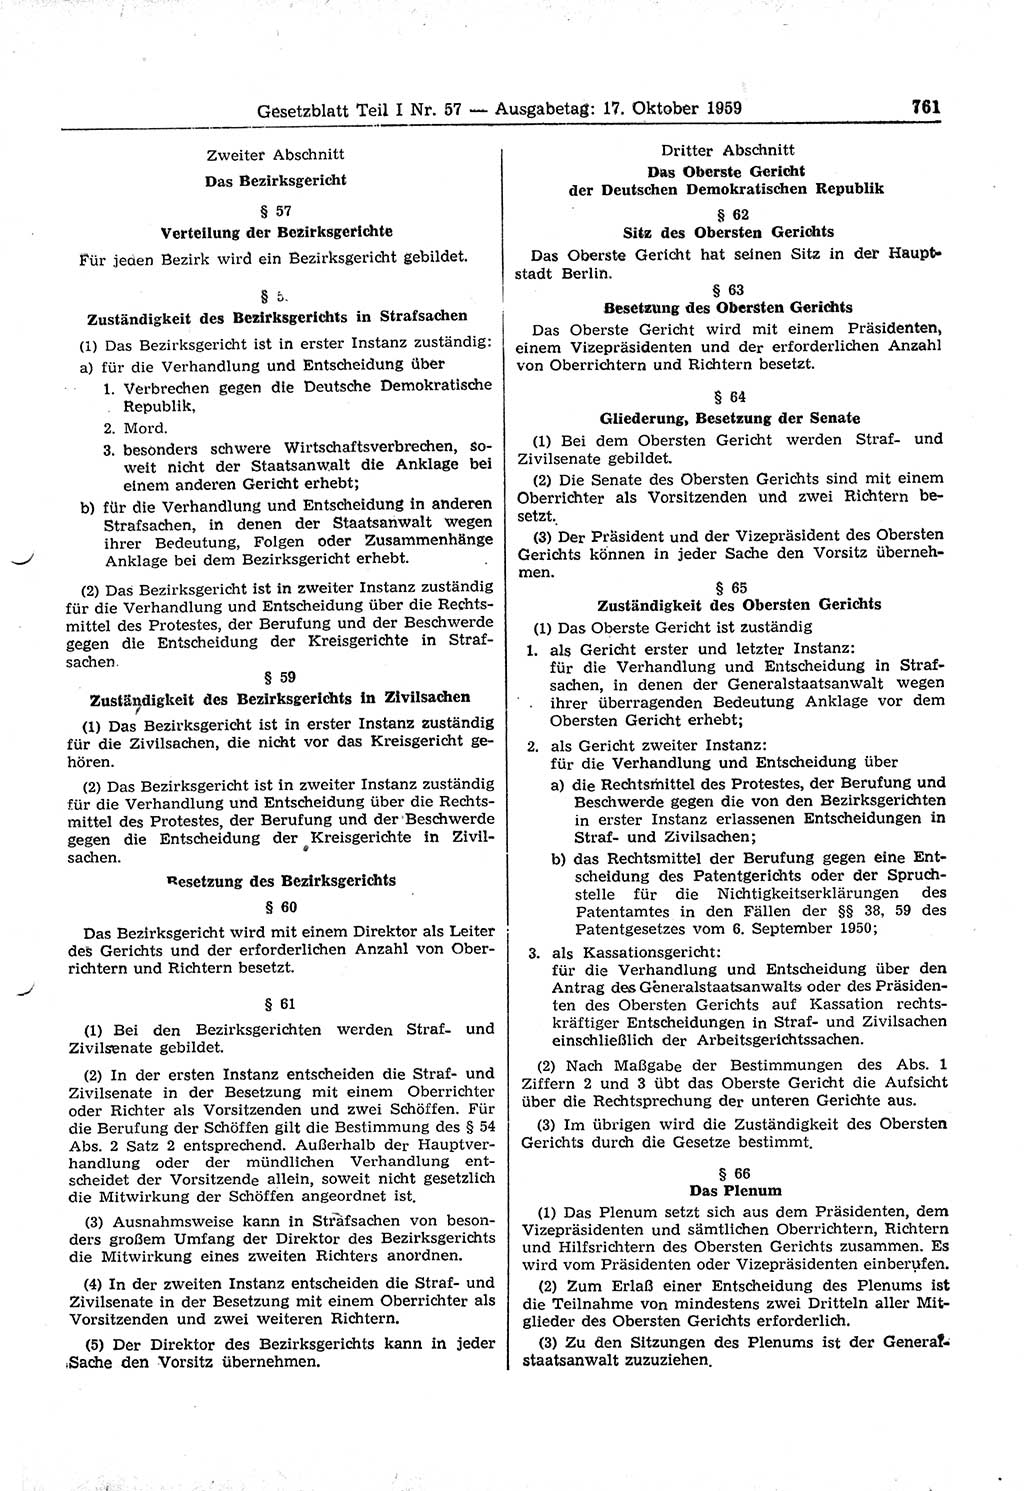 Gesetzblatt (GBl.) der Deutschen Demokratischen Republik (DDR) Teil Ⅰ 1959, Seite 761 (GBl. DDR Ⅰ 1959, S. 761)